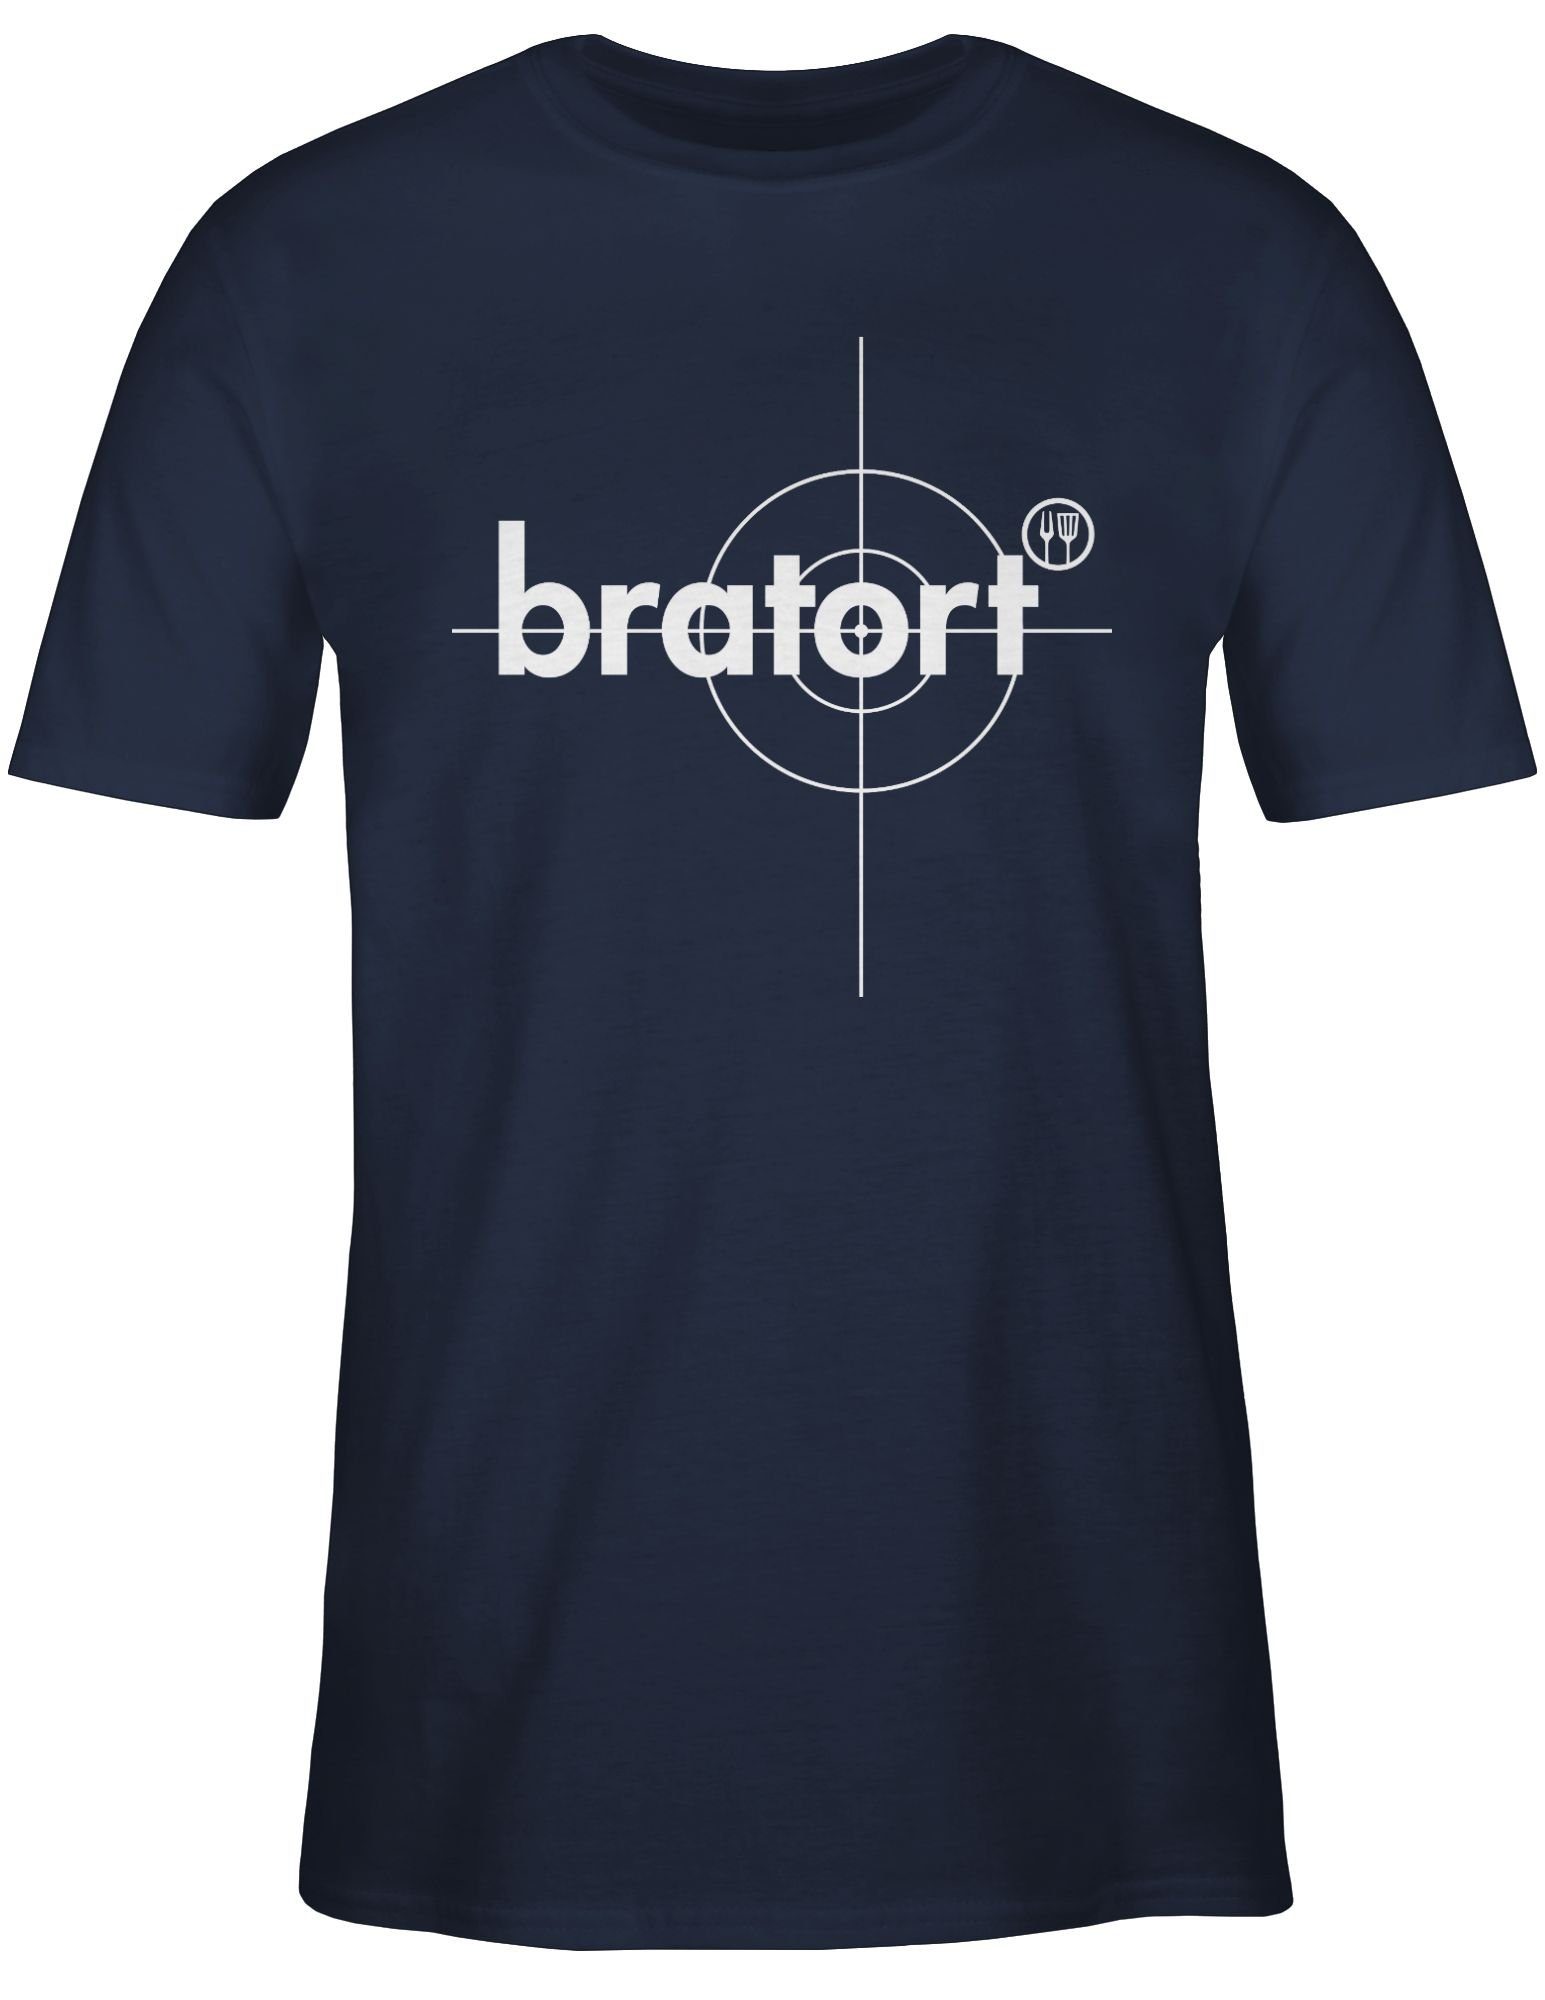 Navy Grillzubehör Grillen Bratort Grillmeister 02 Grill & Geschenk T-Shirt Blau Shirtracer